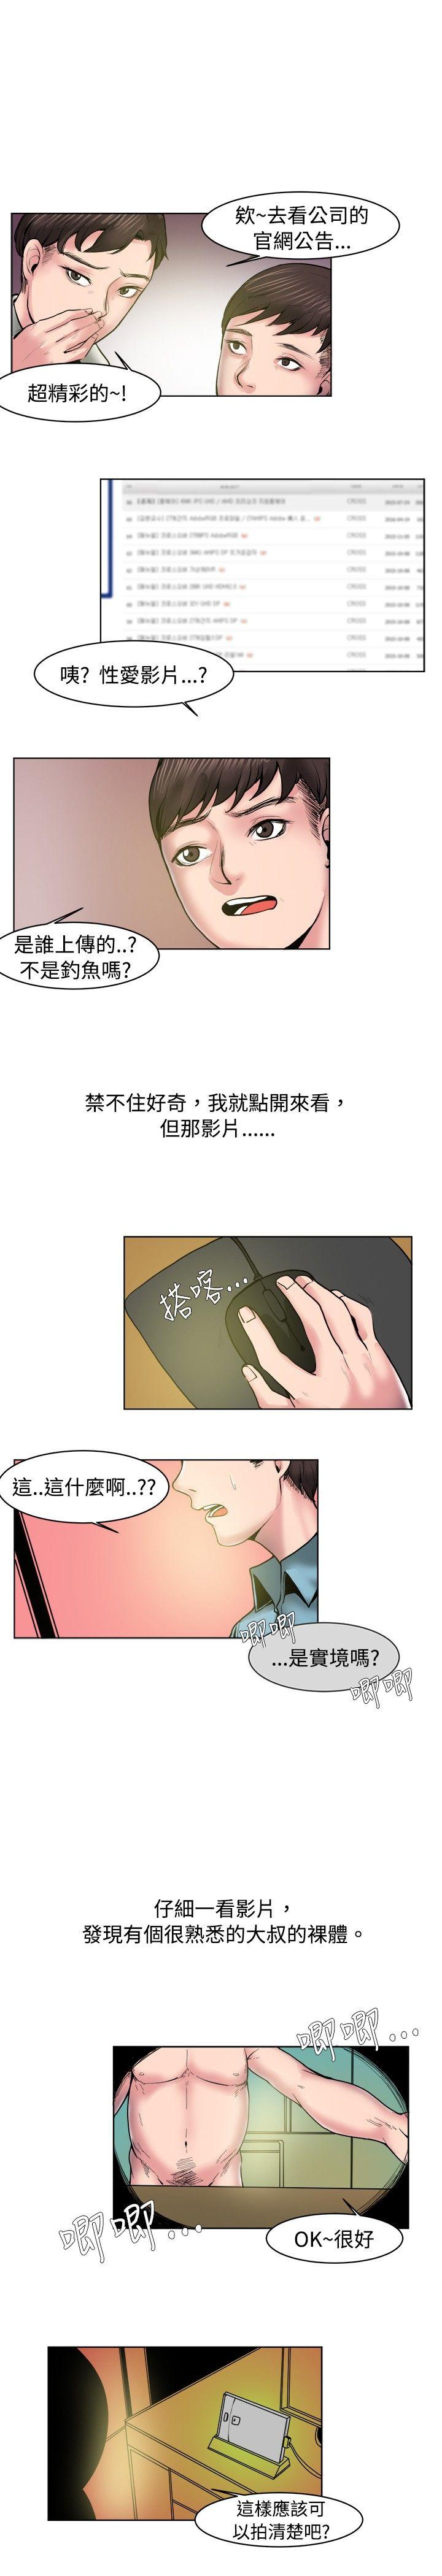 秘密Story  女同事的不伦恋(下) 漫画图片1.jpg